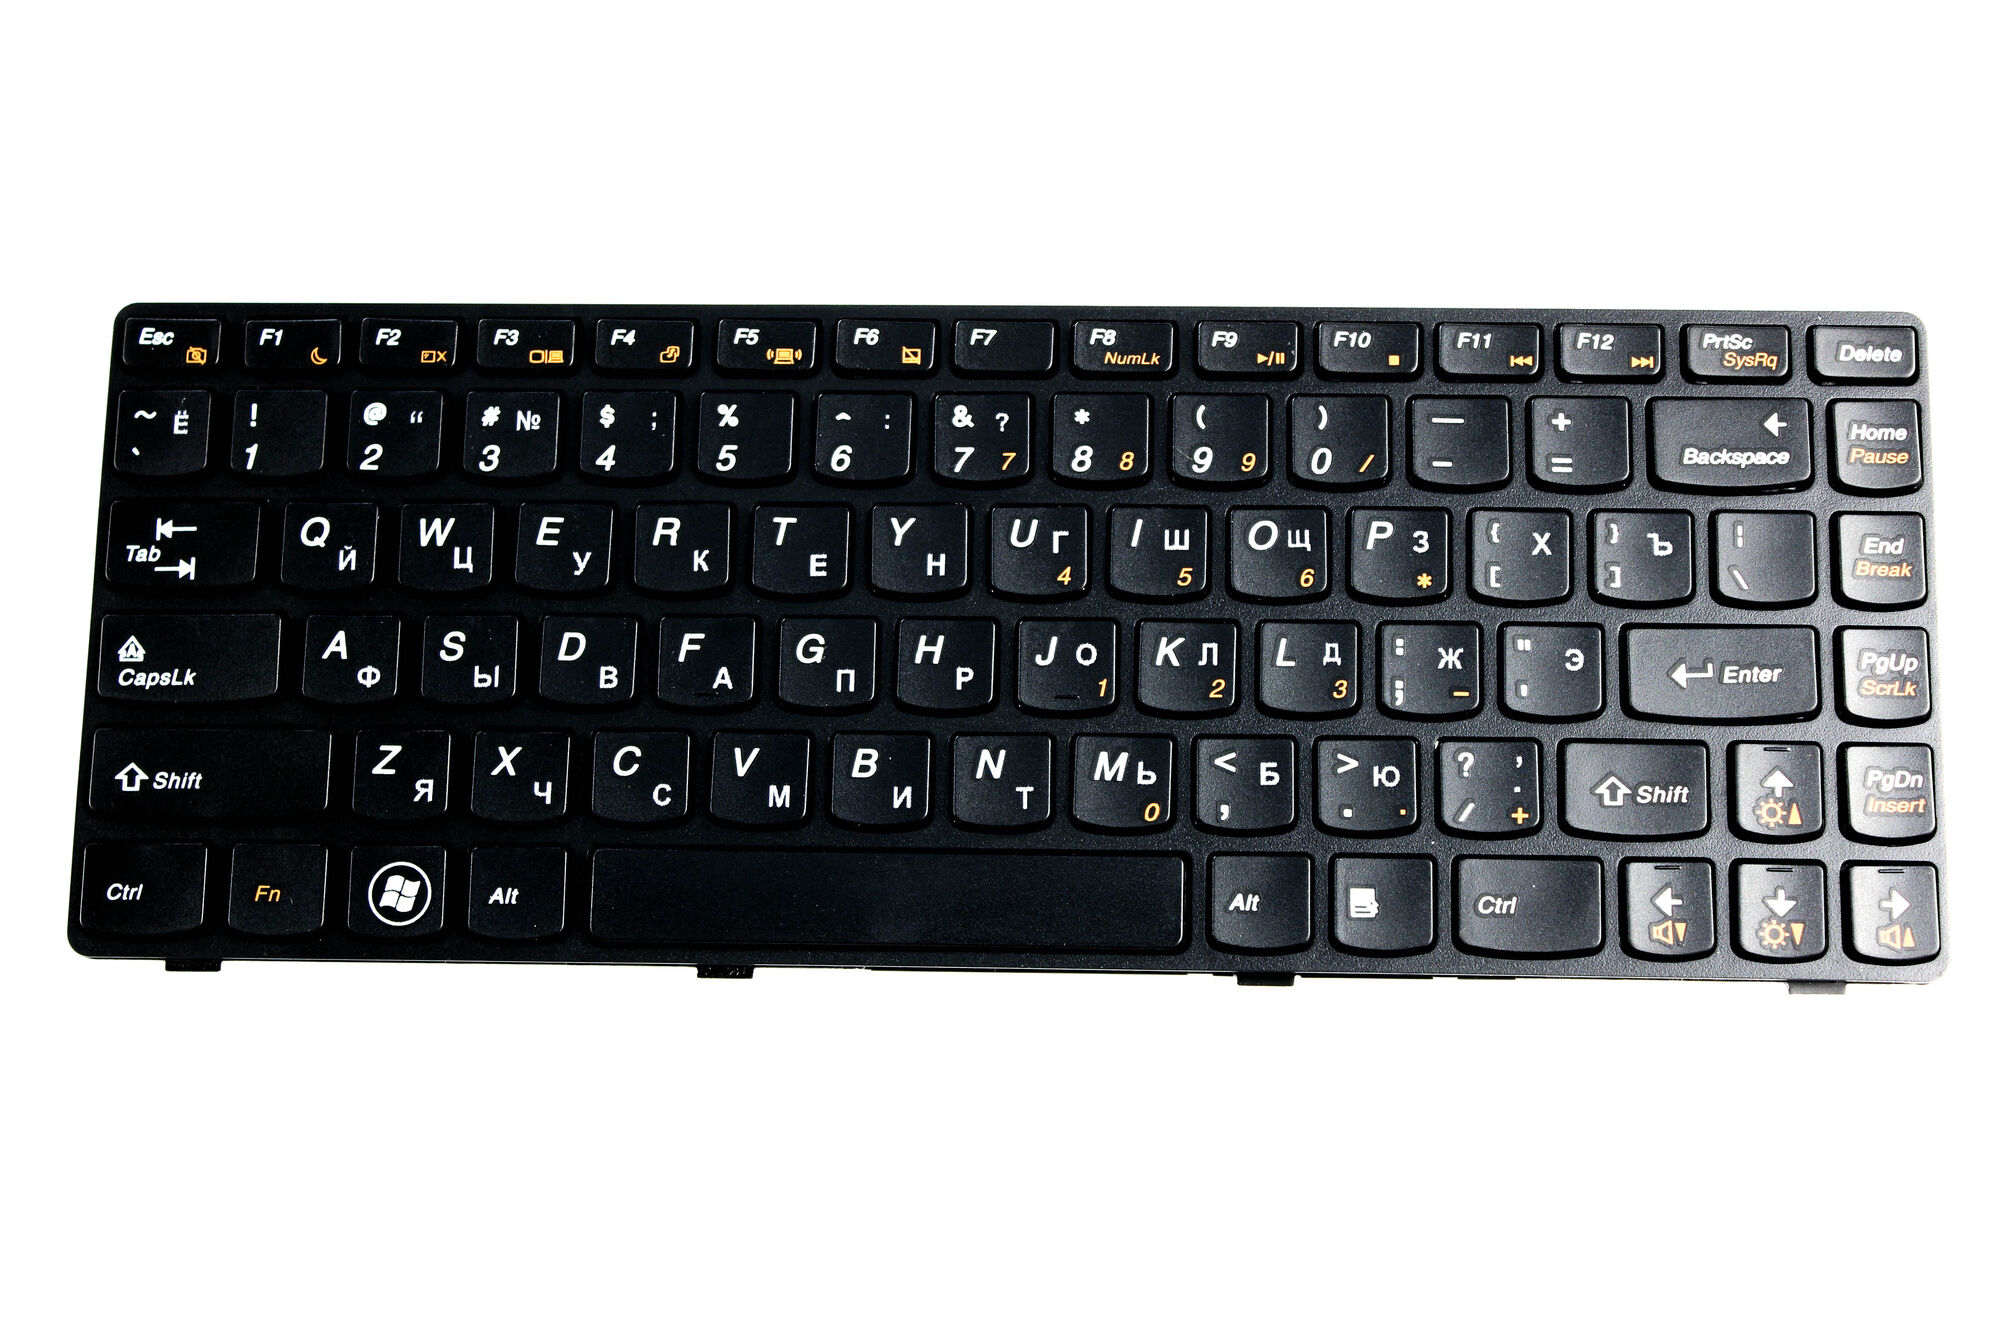 Клавиатура для ноутбука Lenovo Y400 без подсветки p/n: 25205378, PK130RQ3B00